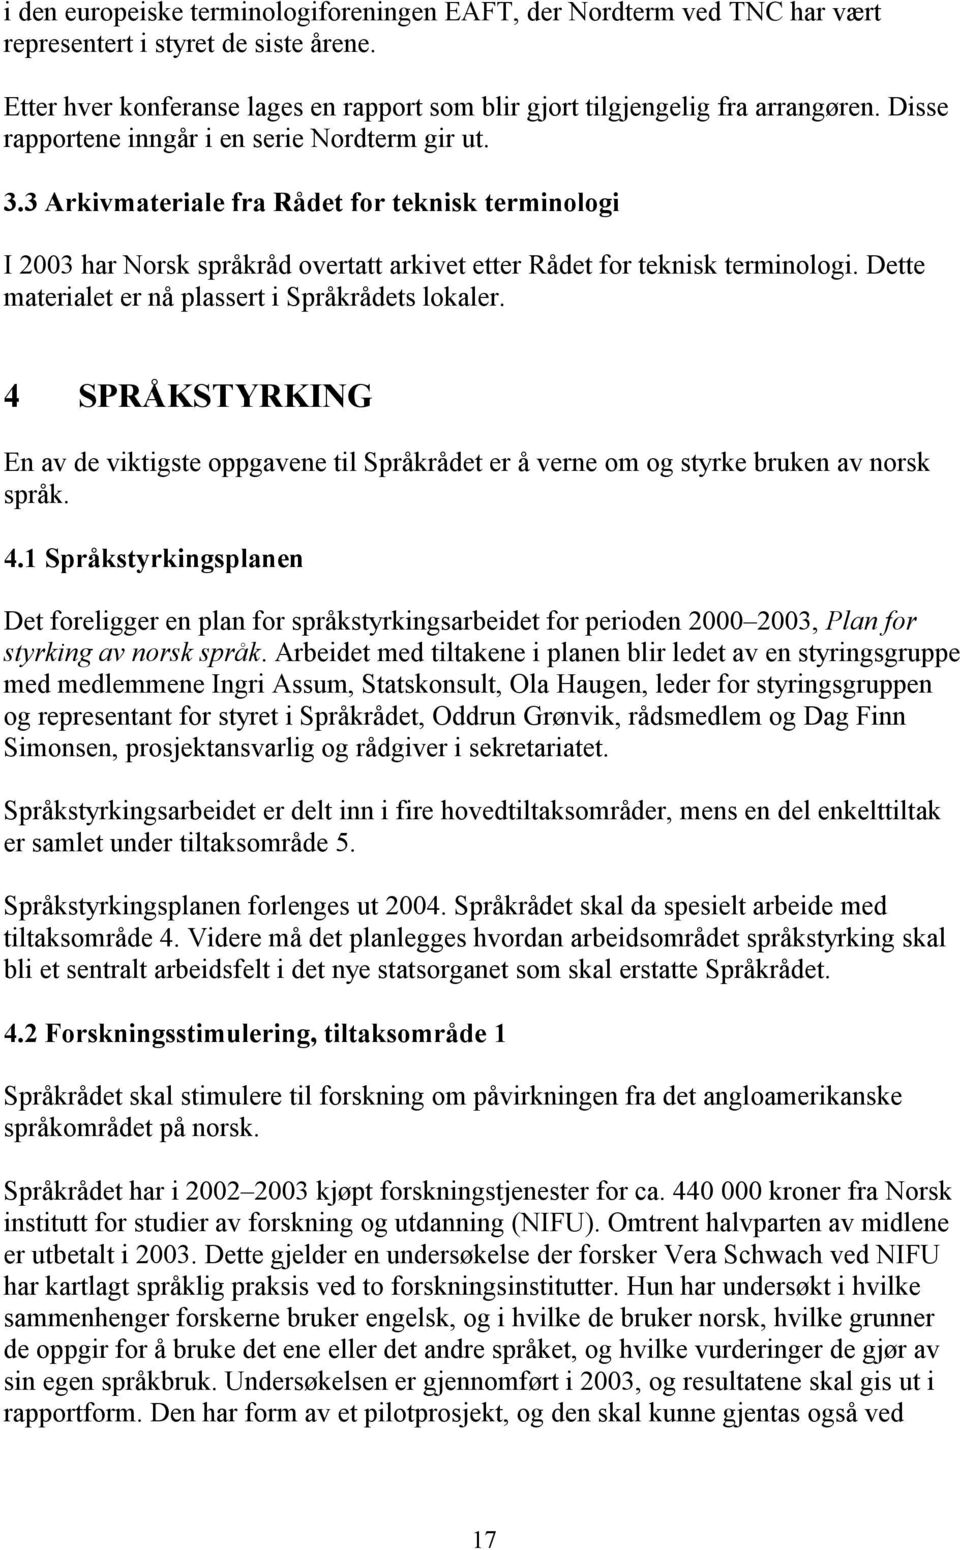 Dette materialet er nå plassert i Språkrådets lokaler. 4 SPRÅKSTYRKING En av de viktigste oppgavene til Språkrådet er å verne om og styrke bruken av norsk språk. 4.1 Språkstyrkingsplanen Det foreligger en plan for språkstyrkingsarbeidet for perioden 2000 2003, Plan for styrking av norsk språk.